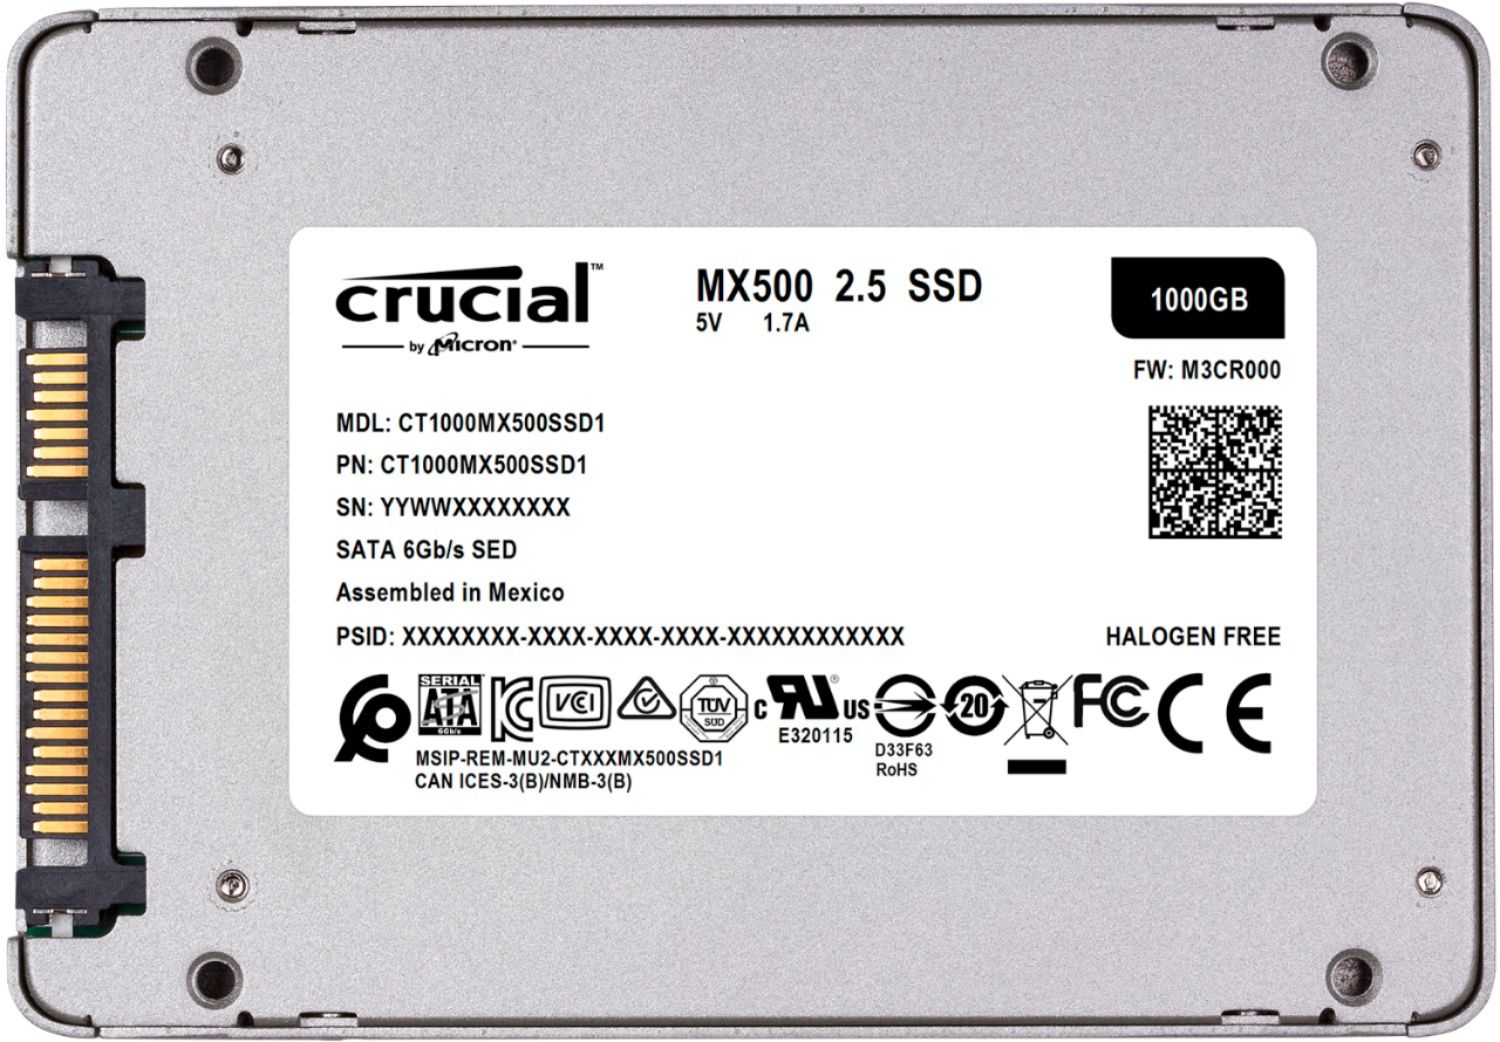 New CT1000MX500SSD1 Crucial MX500 2.5" 1TB SATA III 3D NAND Internal SSD 